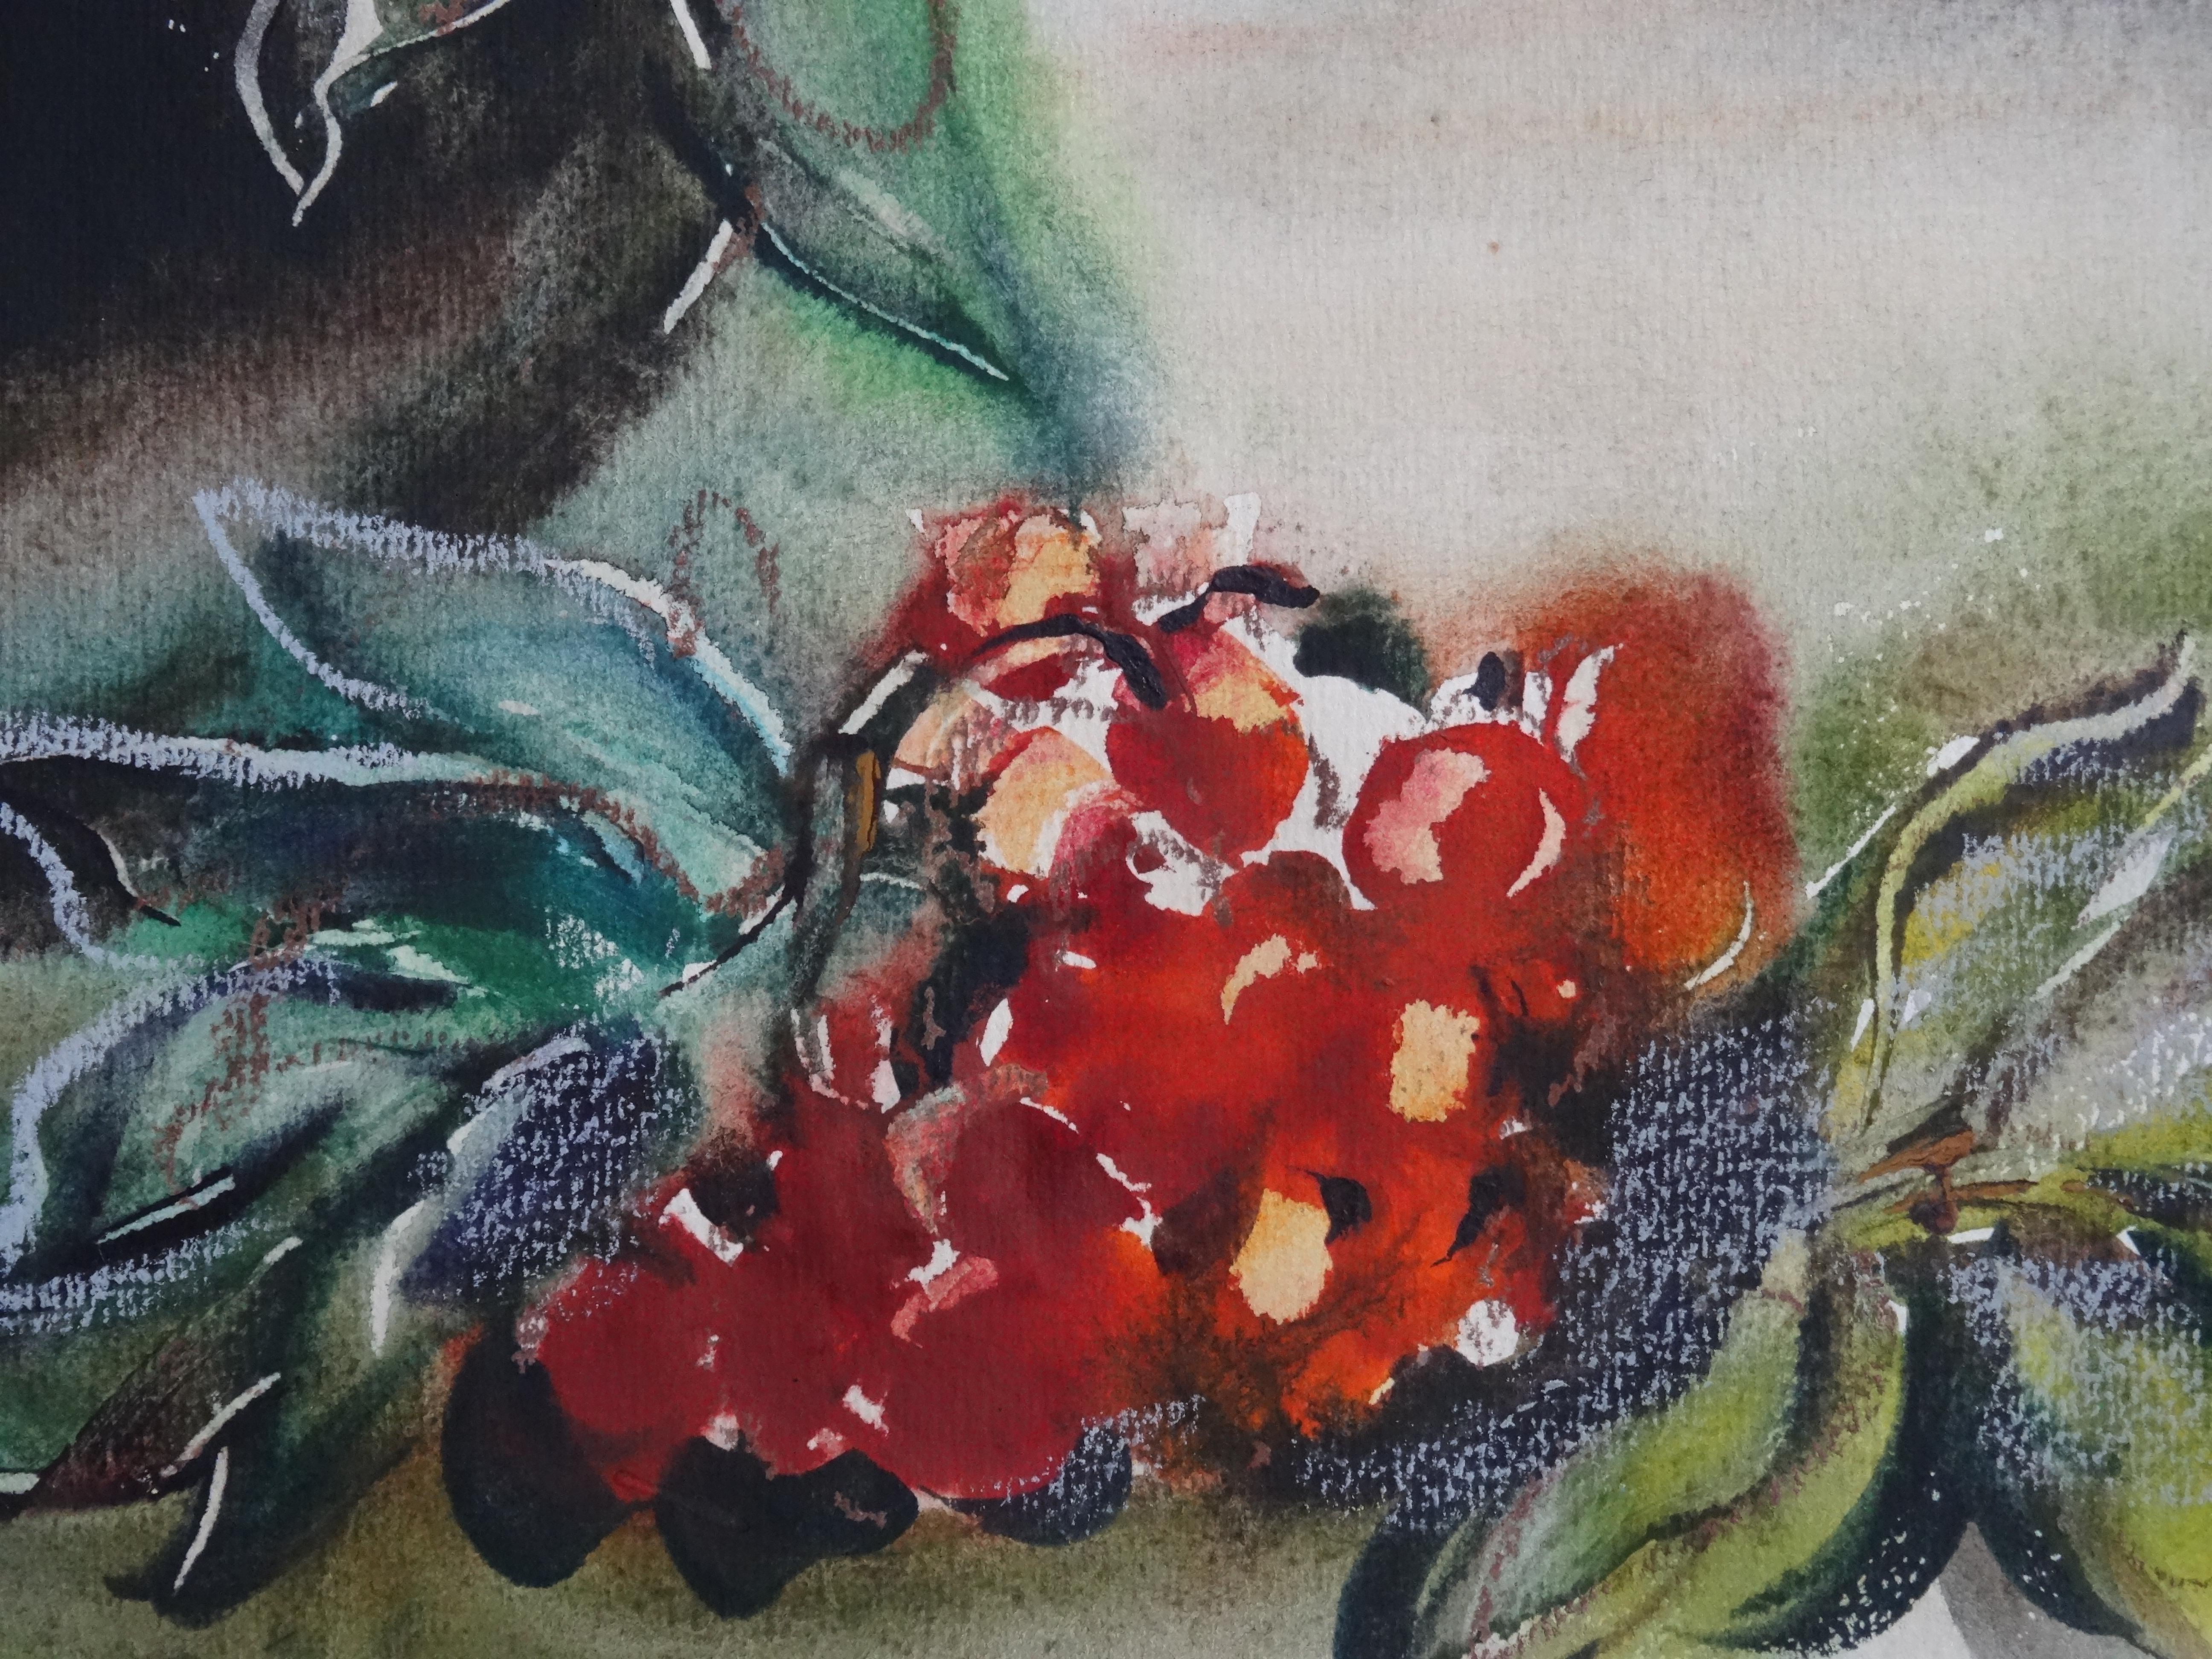 Eberesche. 1989. Papier, Aquarell, 61x70 cm

Dzidra Bauma (1930)

Dzidra Bauma arbeitet in Aquarelltechnik. Sie malt figürliche Kompositionen, Porträts, Landschaften, Blumen und Stillleben. Sie ist eine der produktivsten Aquarellmalerinnen der